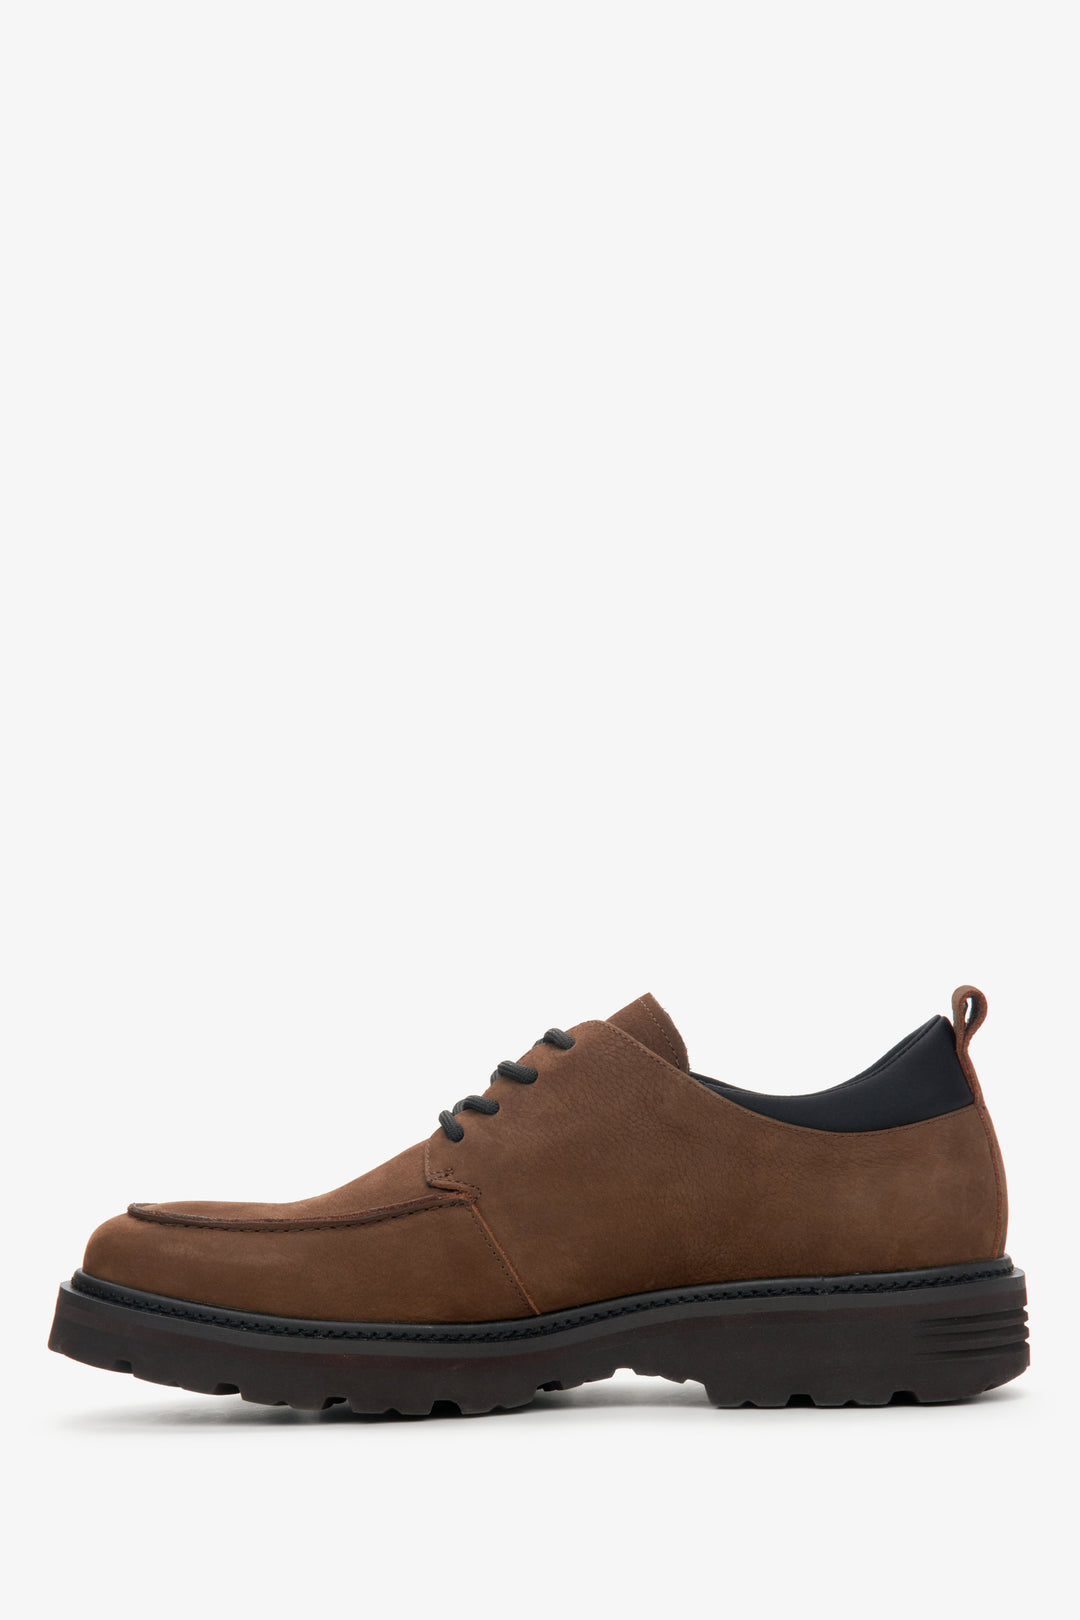 Men's dark brown loafers by Estro - shoe profile.